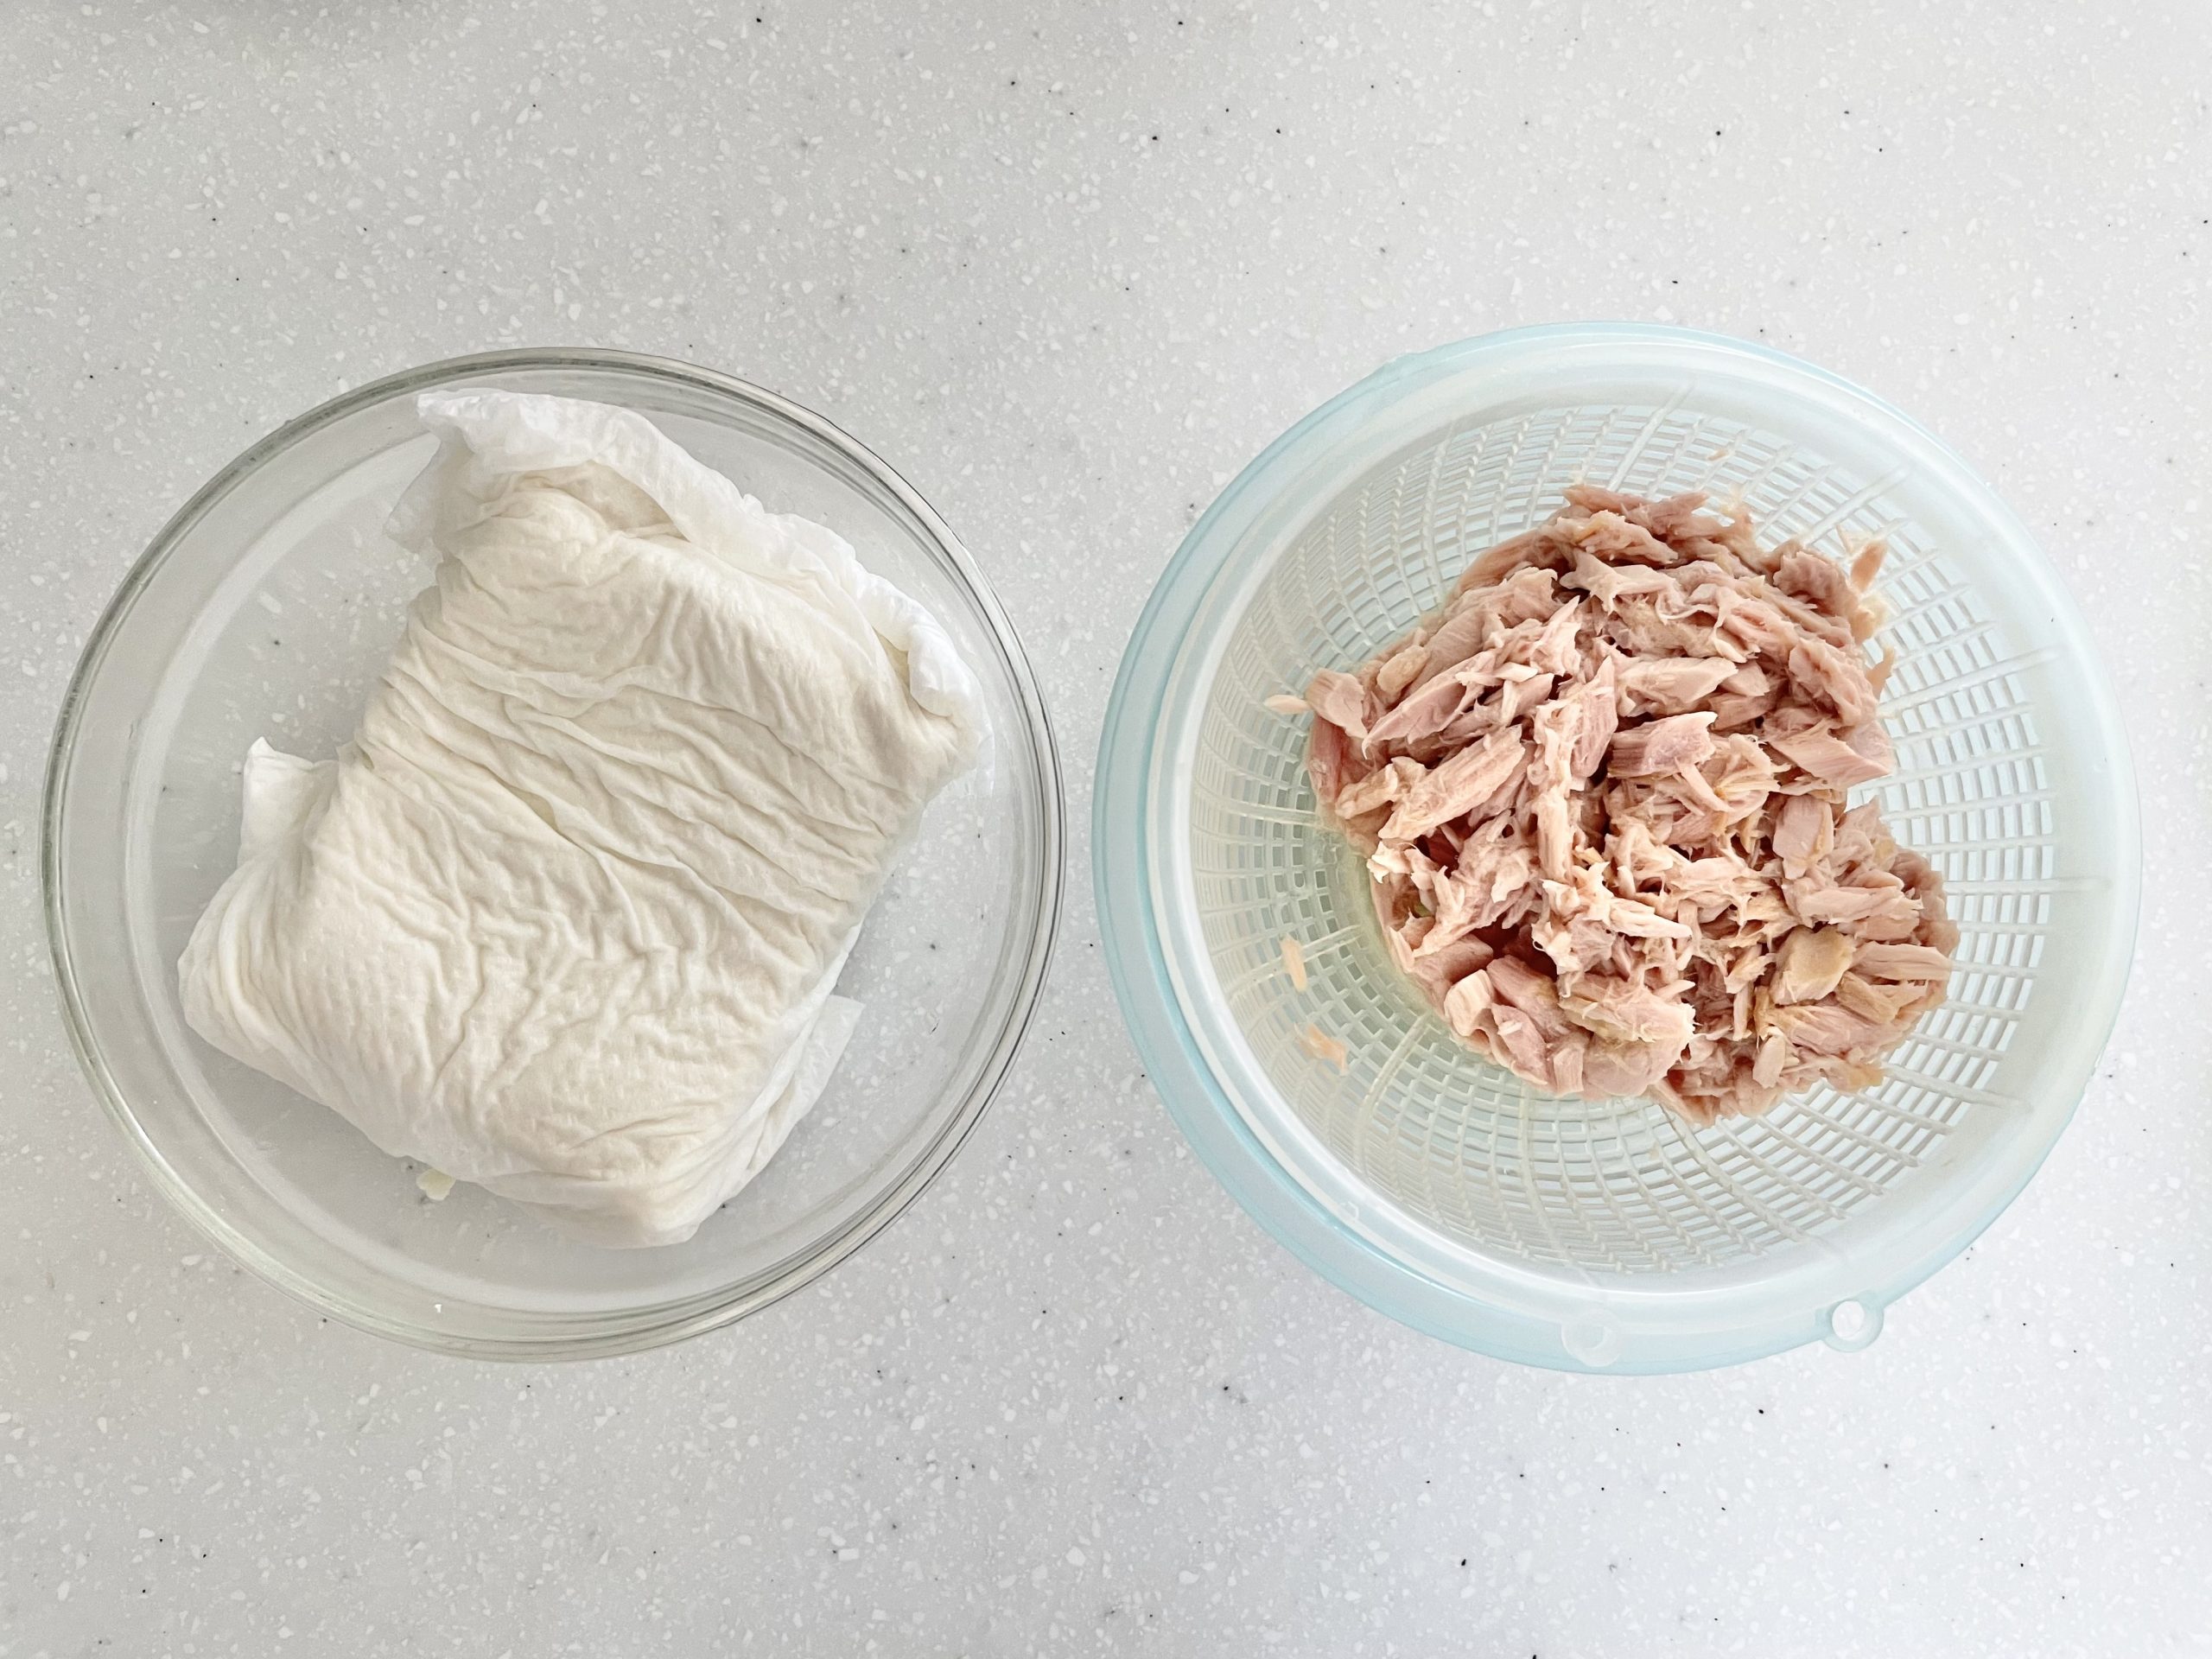 【下準備】絹豆腐はしっかり水切りをしておく。ツナ缶も軽く水切りをしておく。